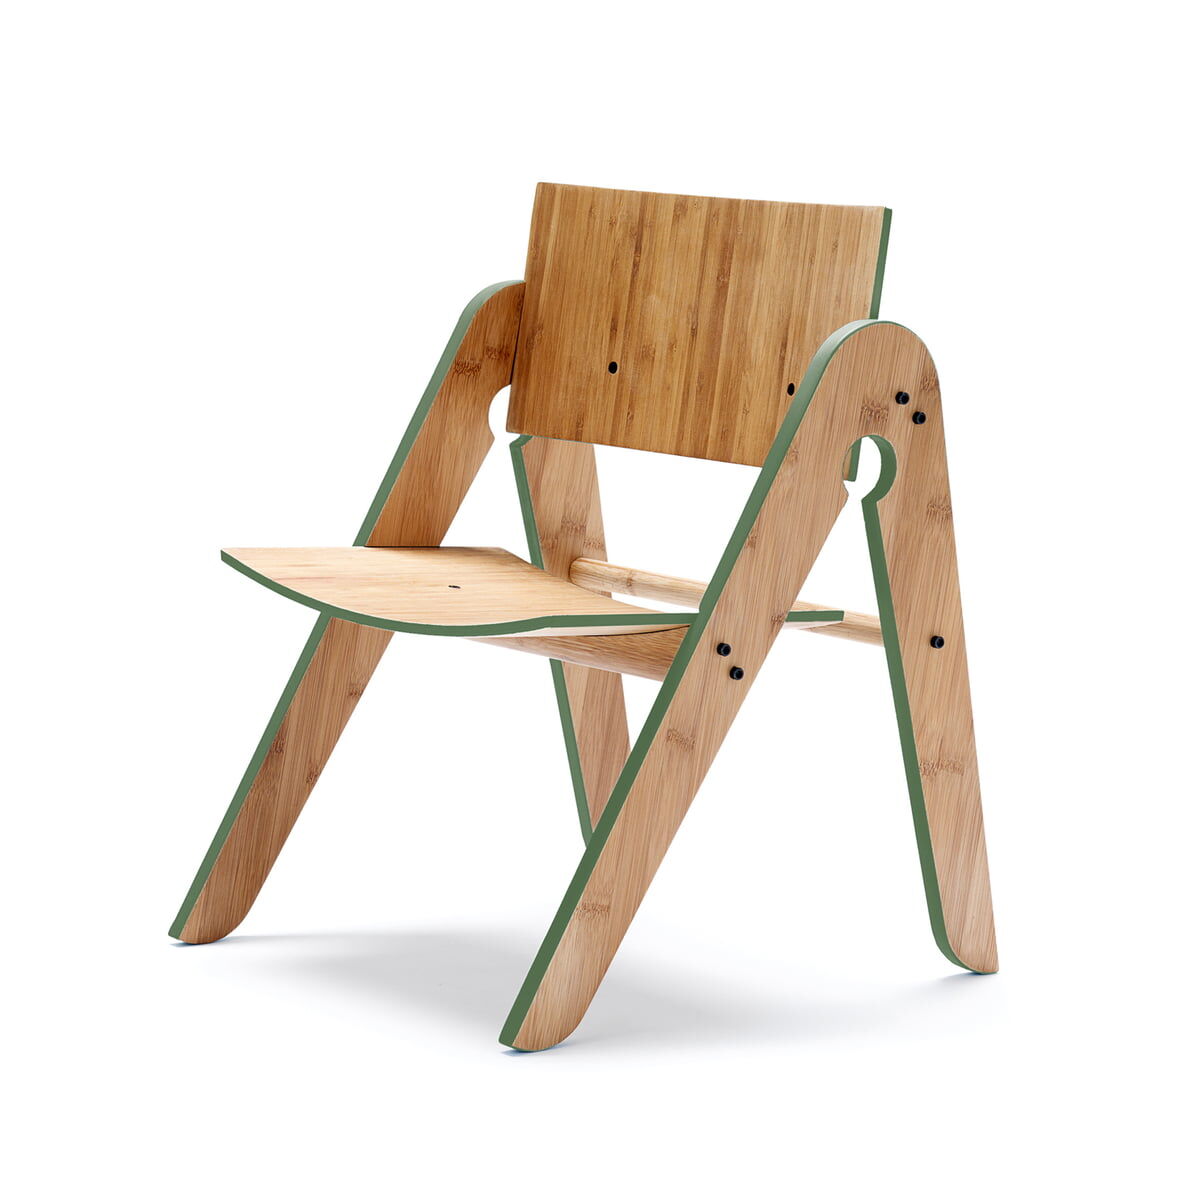 We Do wood - Lilly's Chair, grün